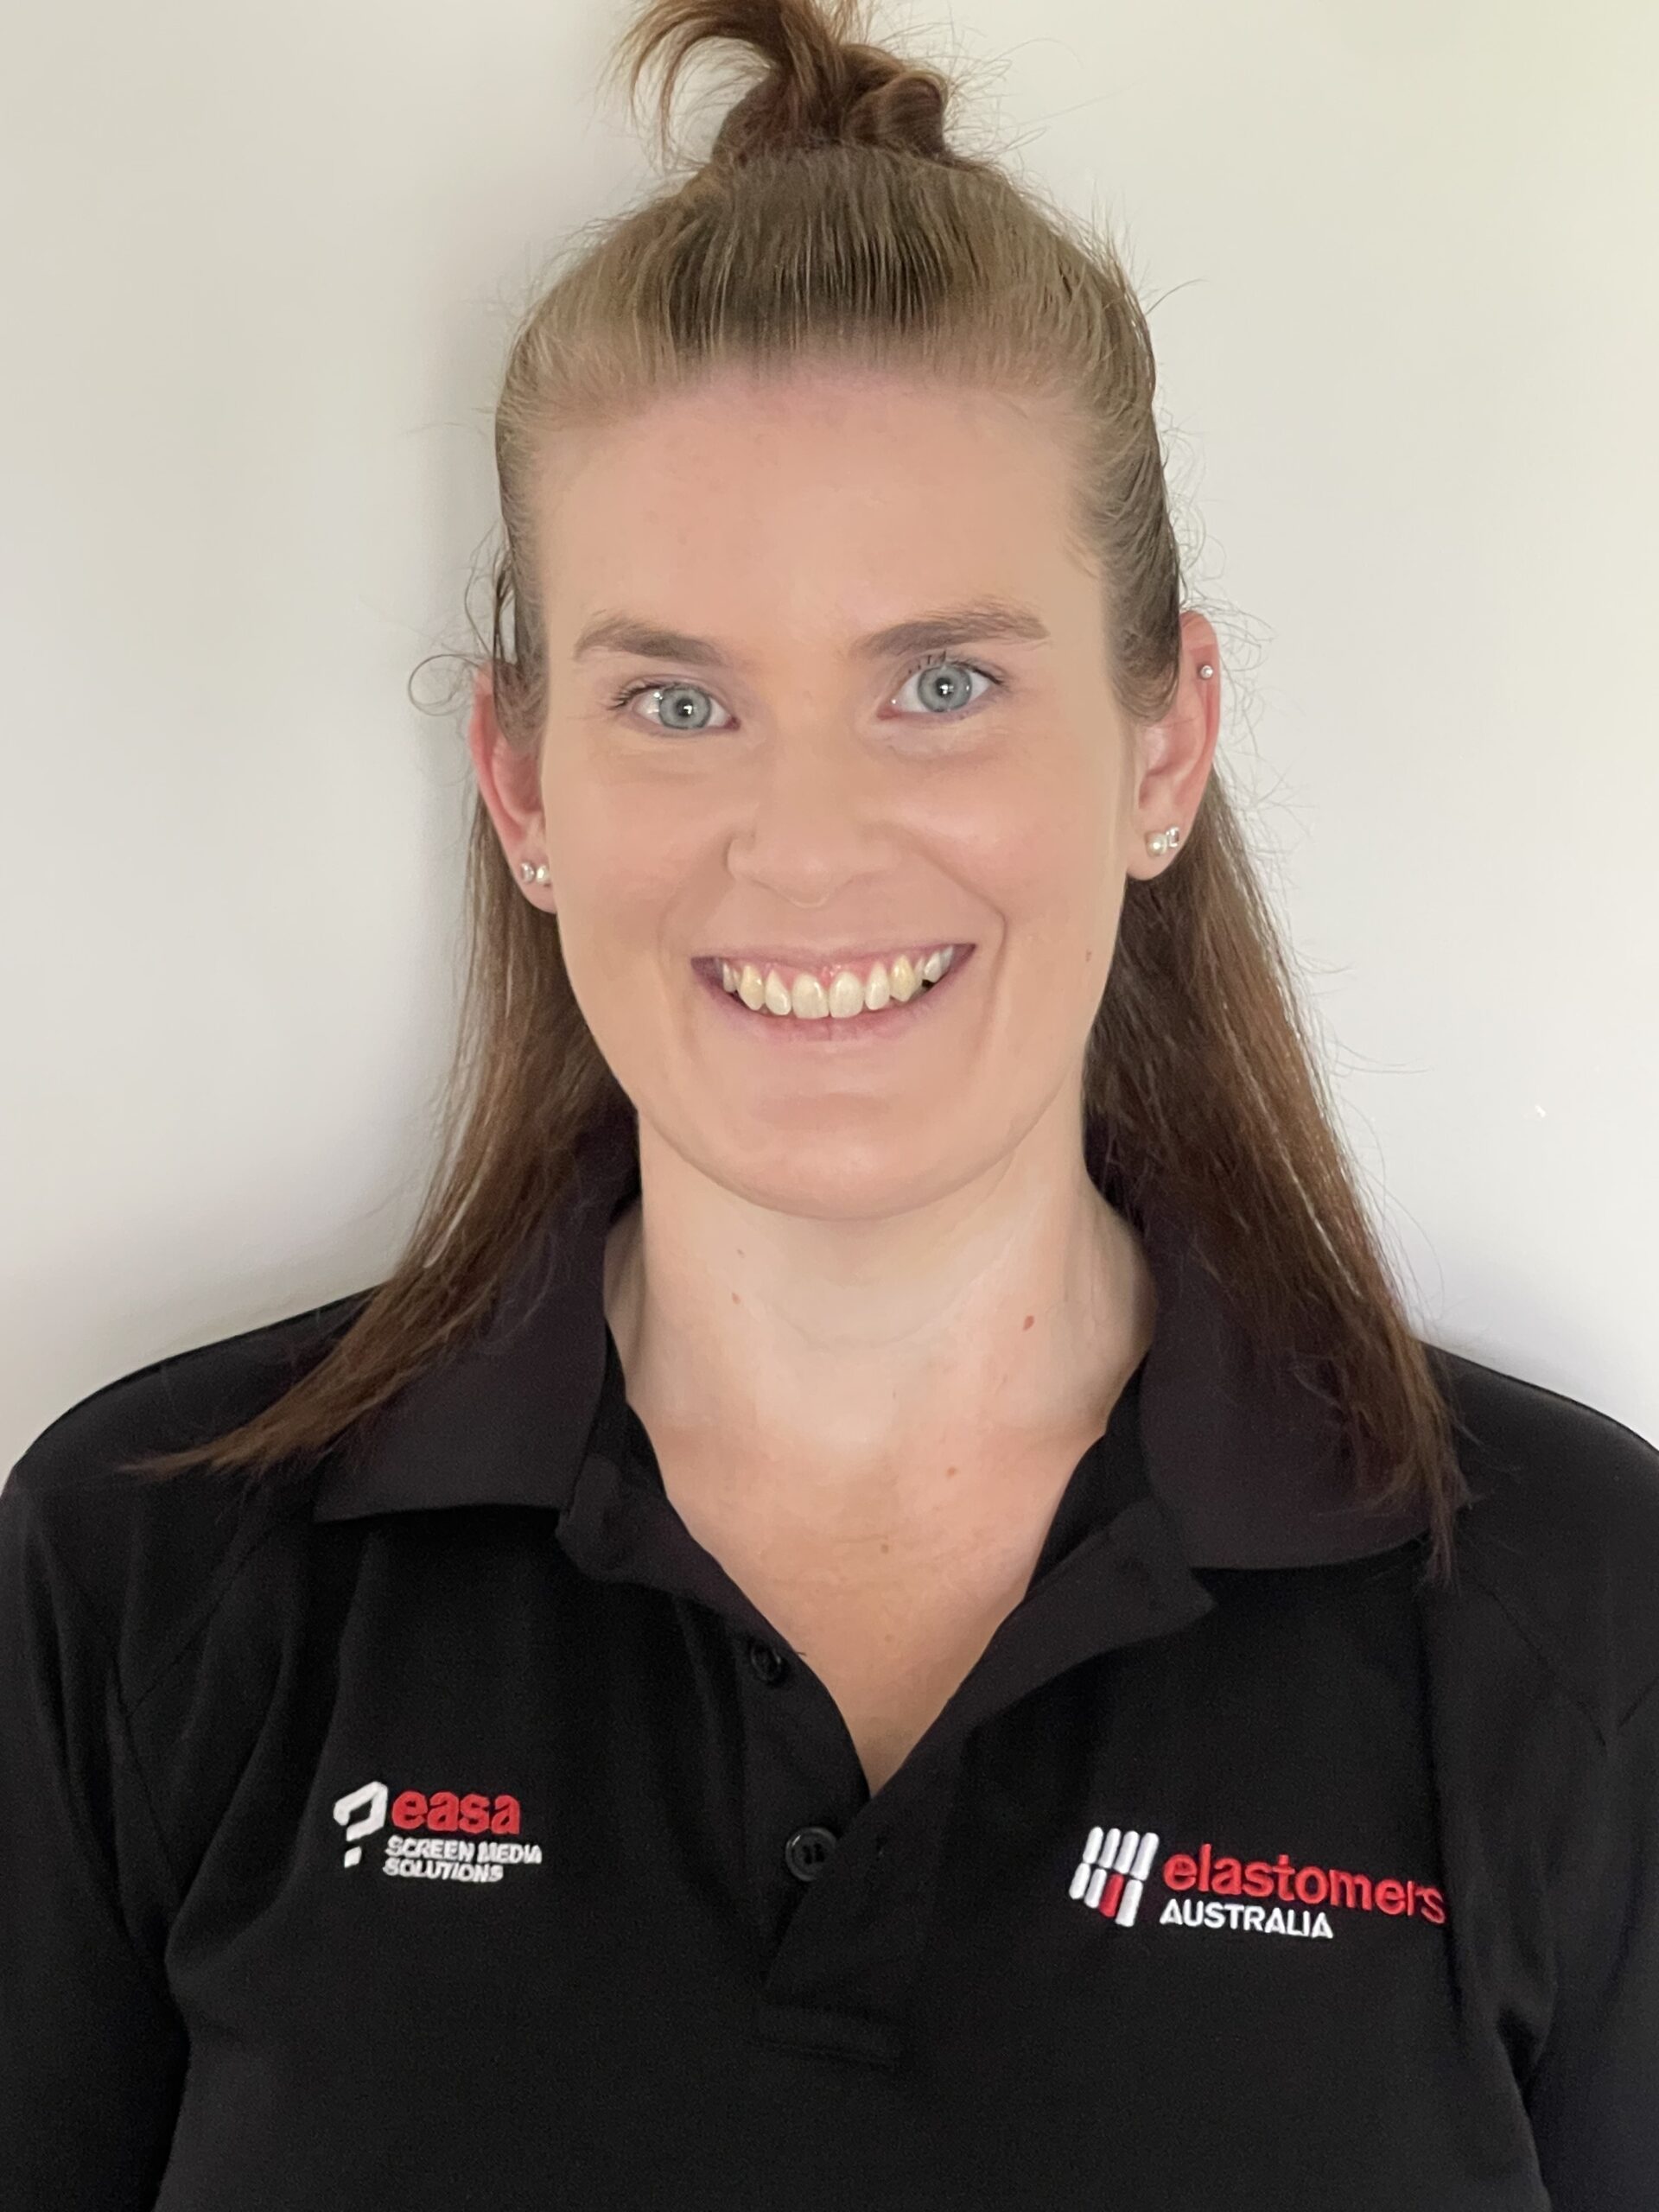 Elastomers Australia's Senior OHS Advisor Evie Lawn